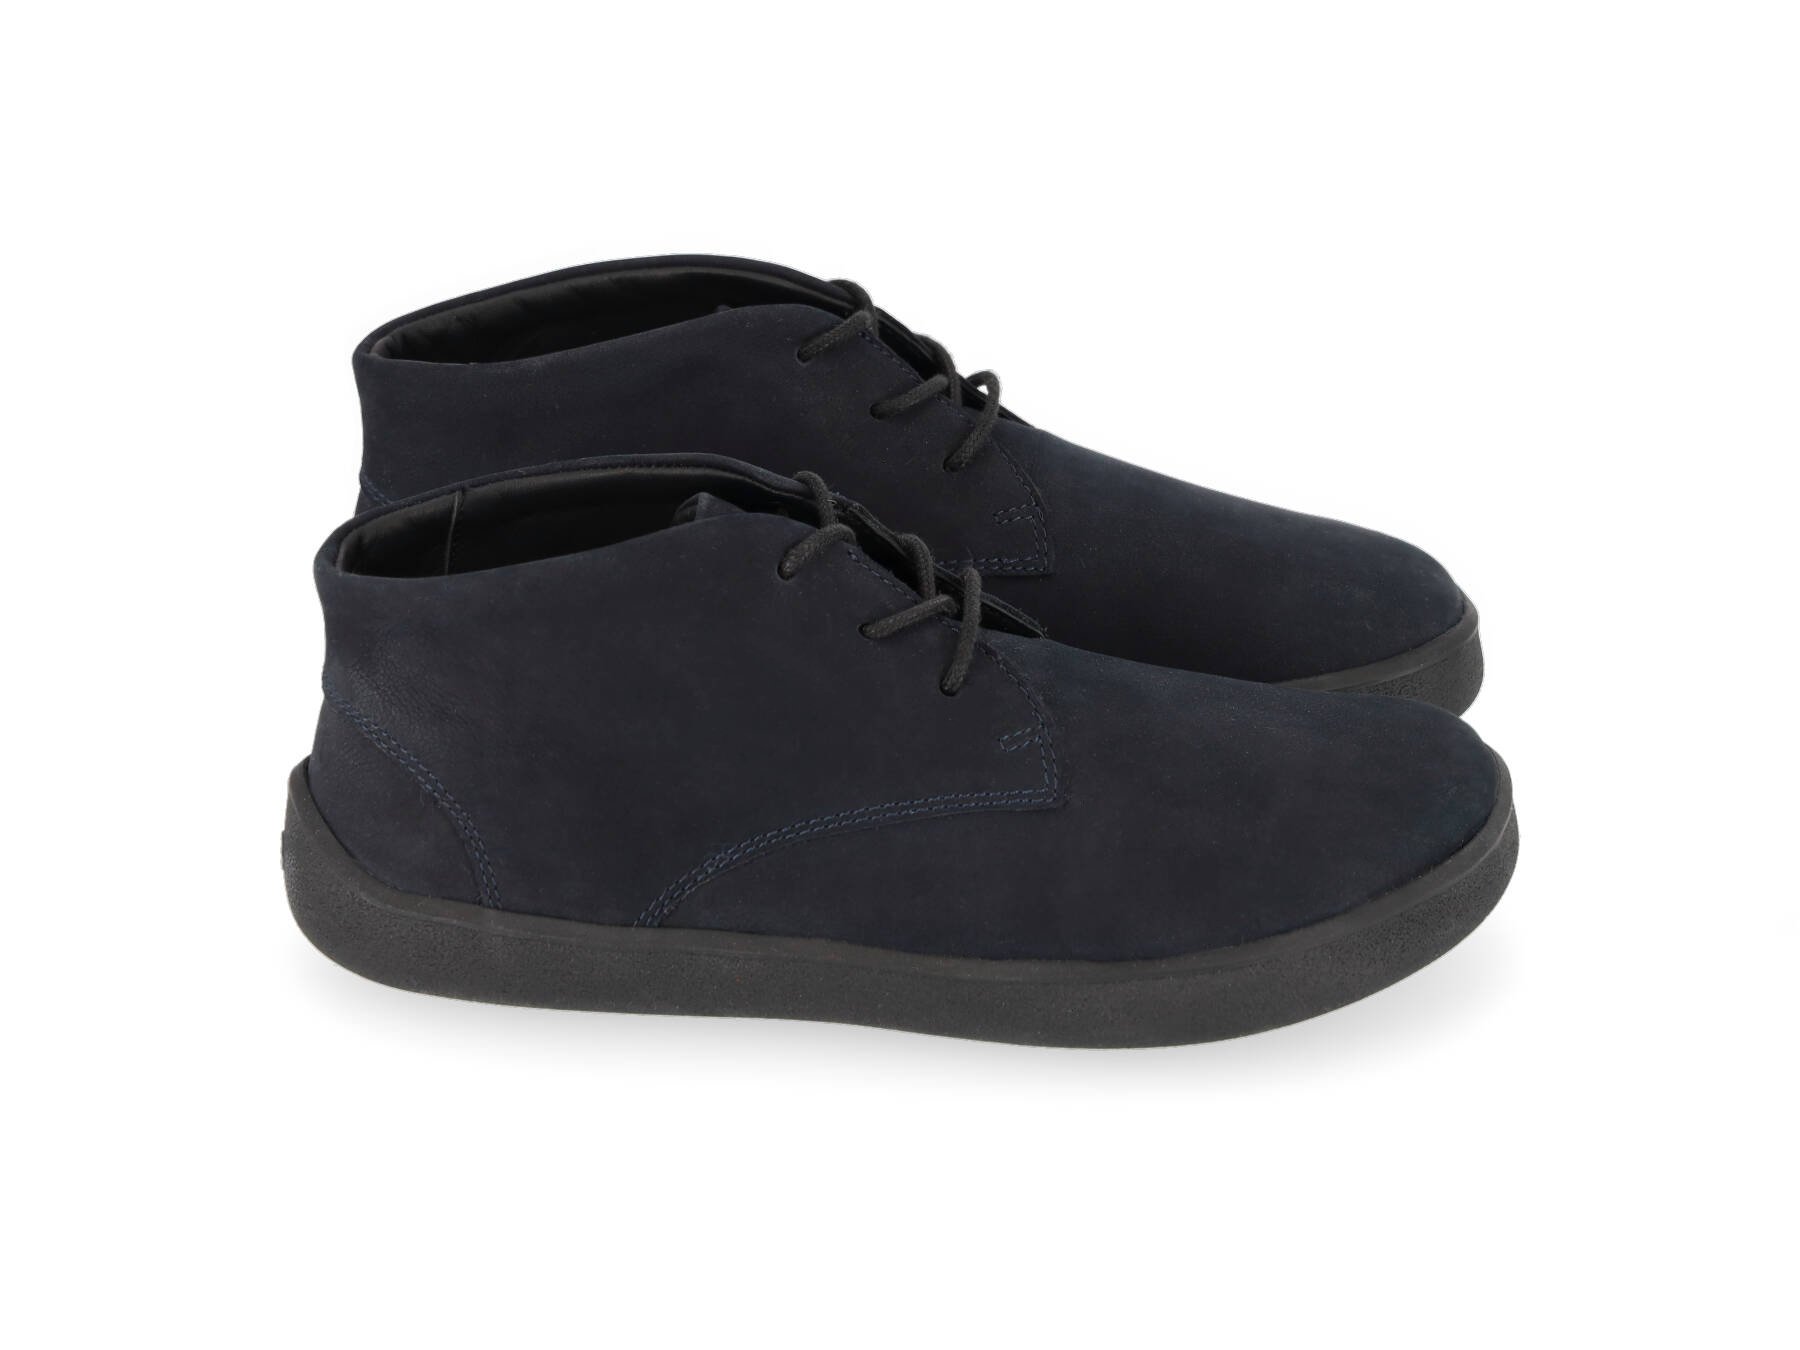 Barefoot Shoes Be Lenka Glide - All Black Matt | Be Lenka